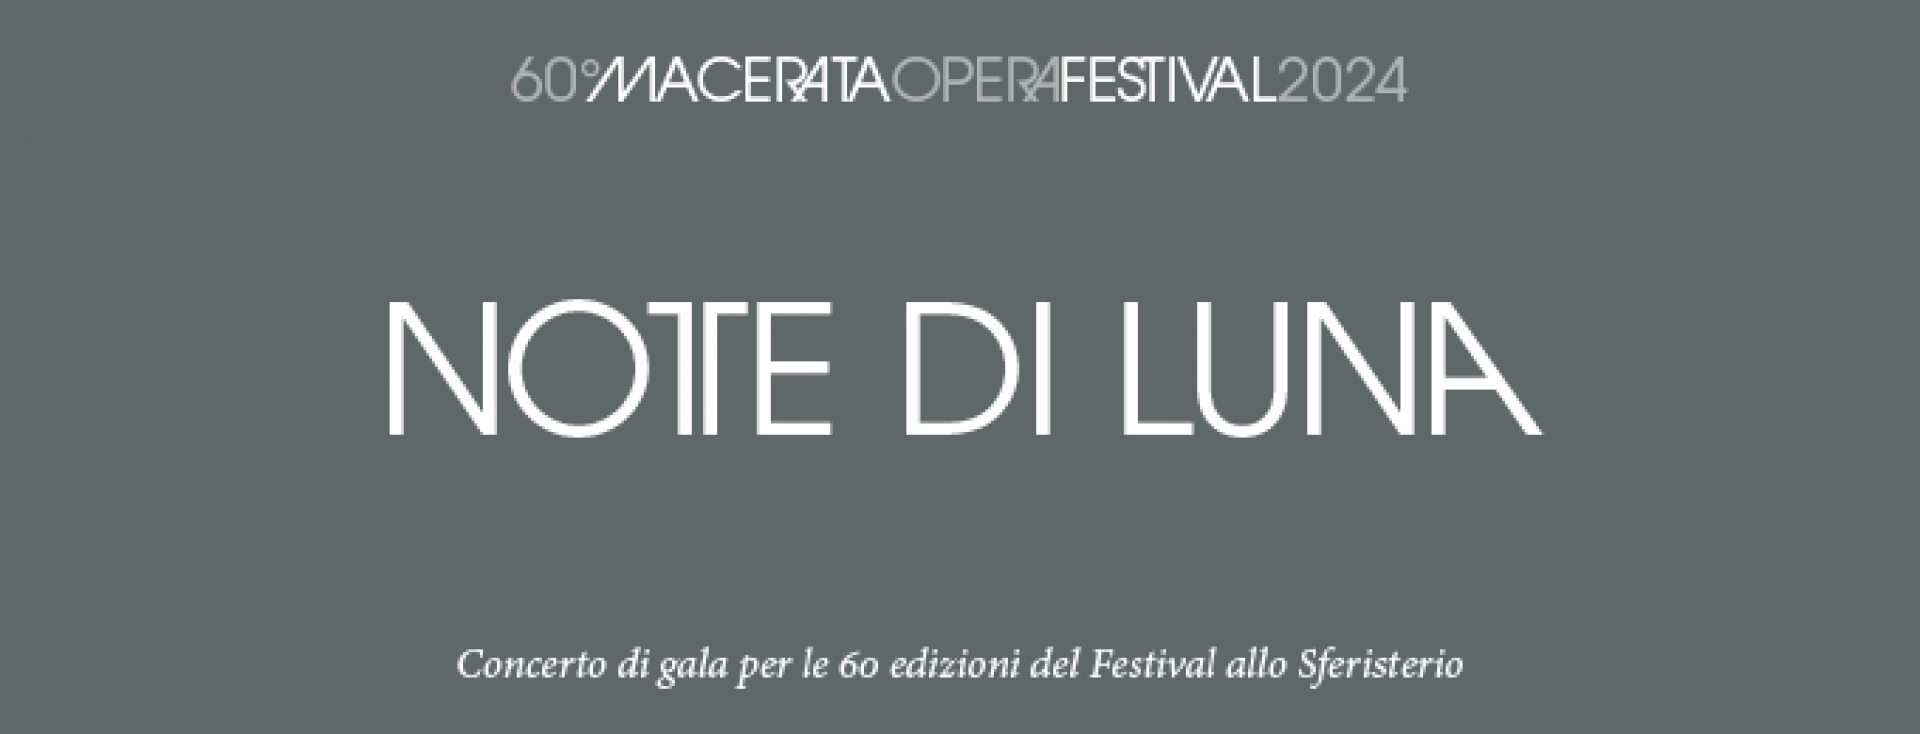 Notte Di Luna -Macerata Opera Festival 2024